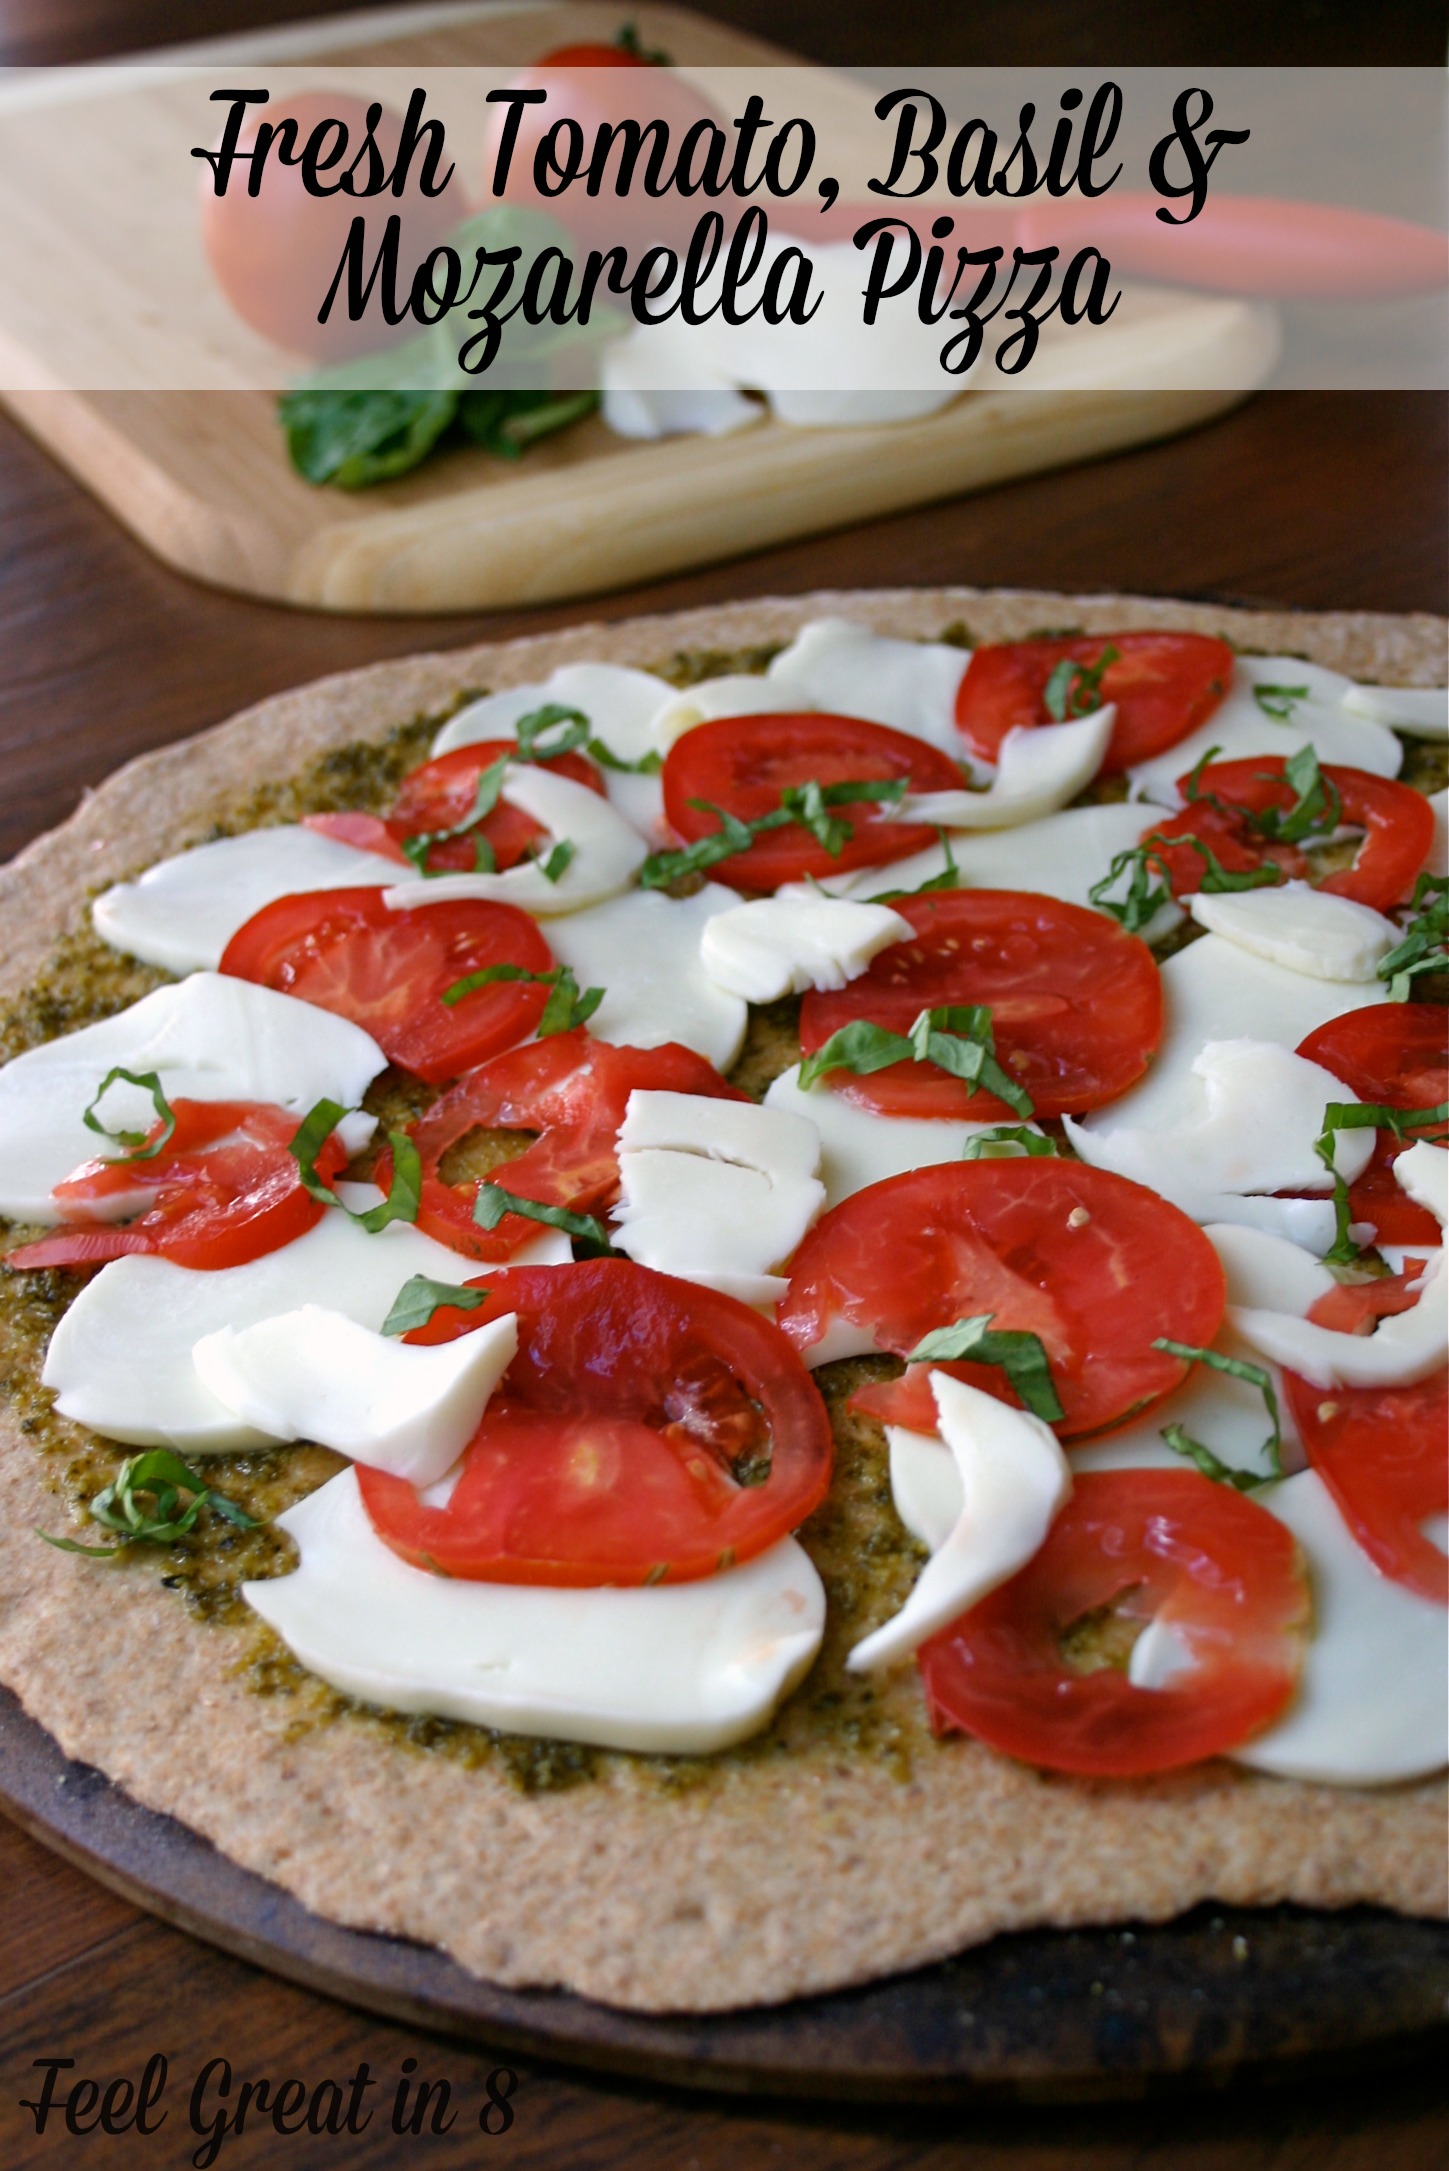 Tomato, Basil & Mozarella Pizza - Feel Great in 8 Blog